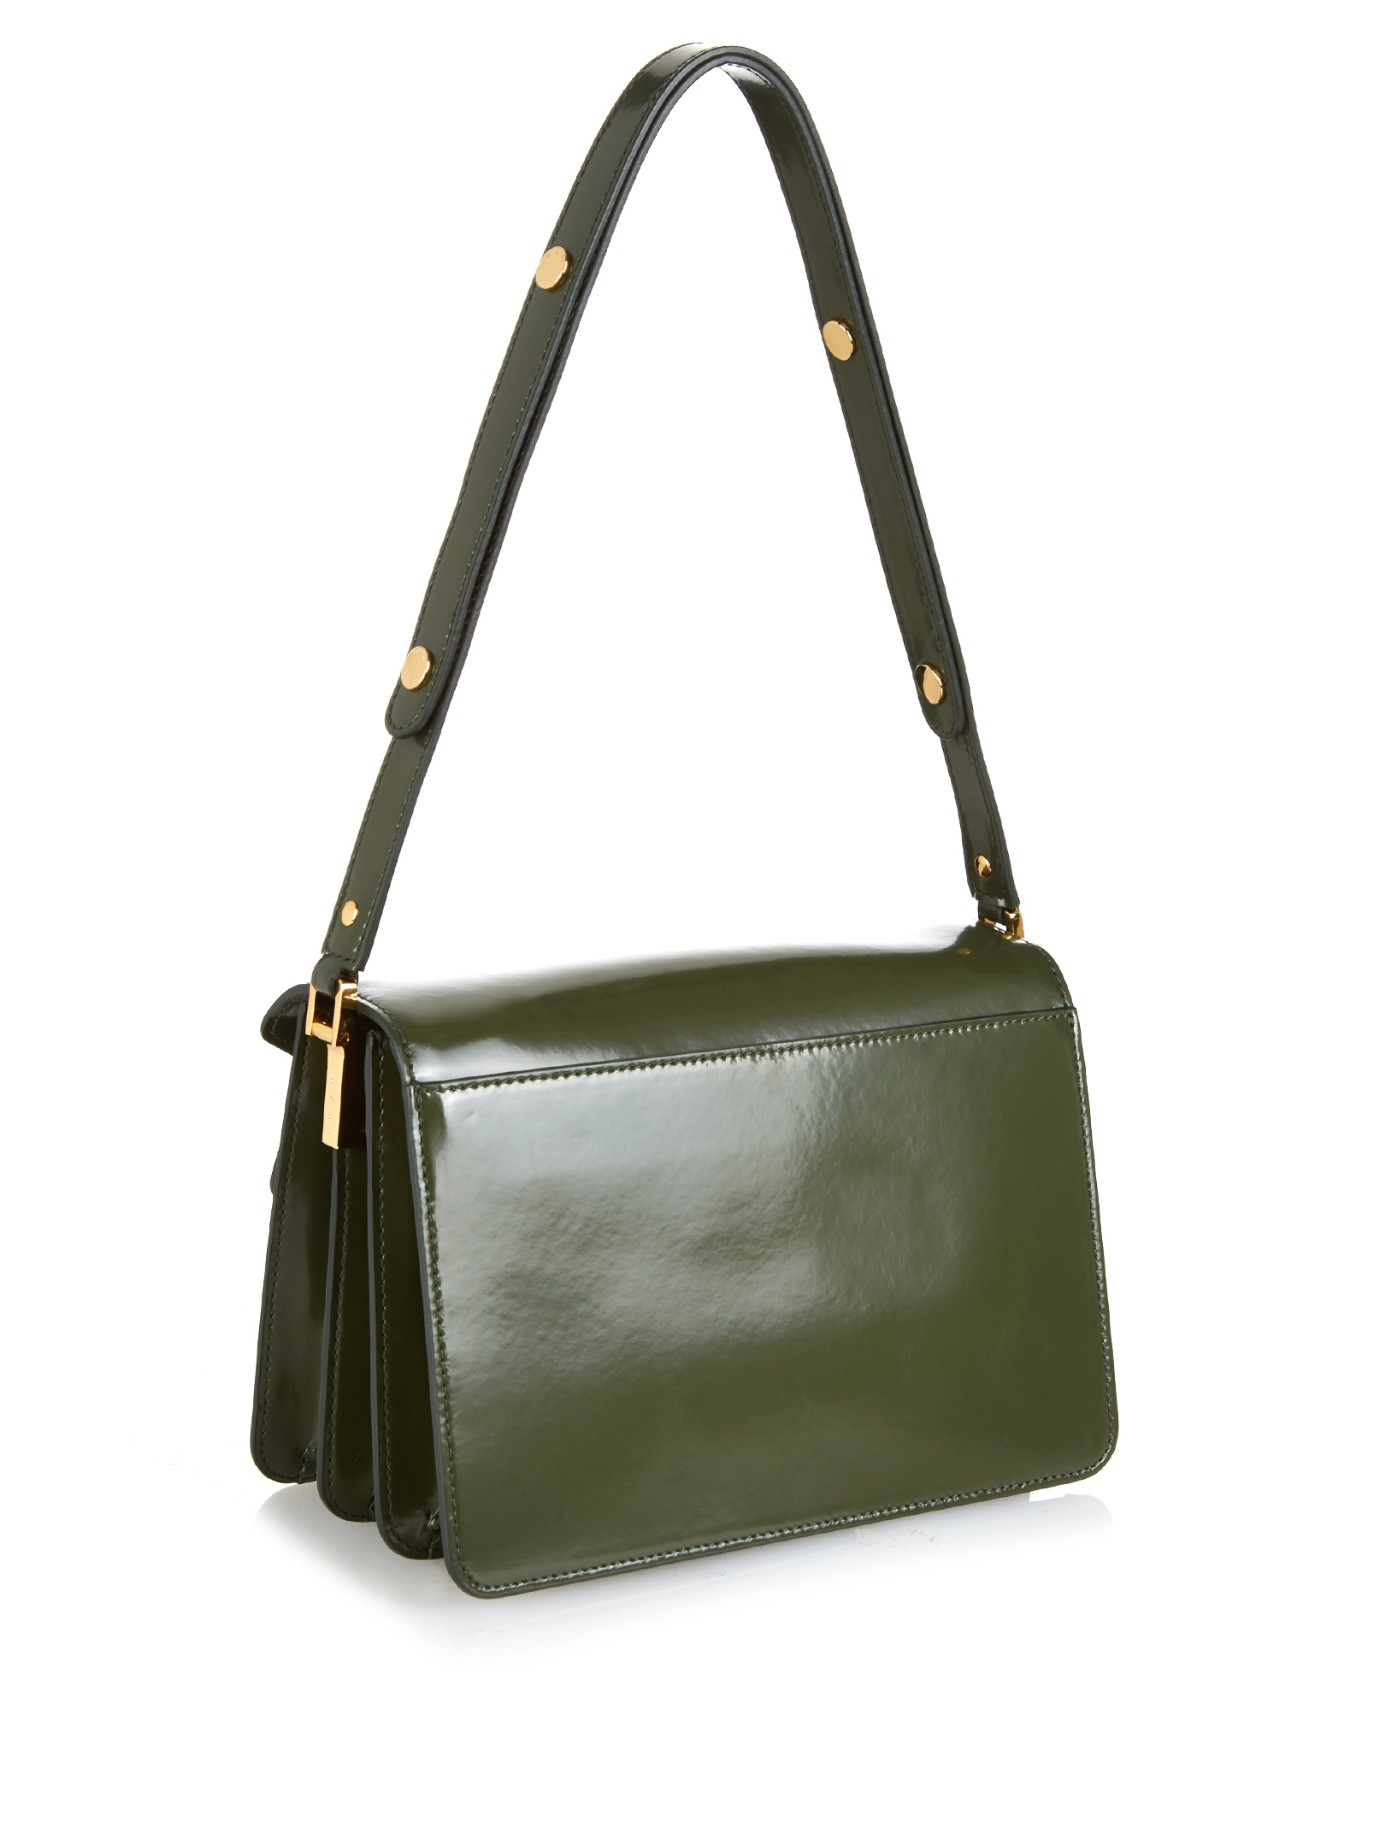 Marni Trunk Medium Leather Shoulder Bag in Dark Green (Green) - Lyst